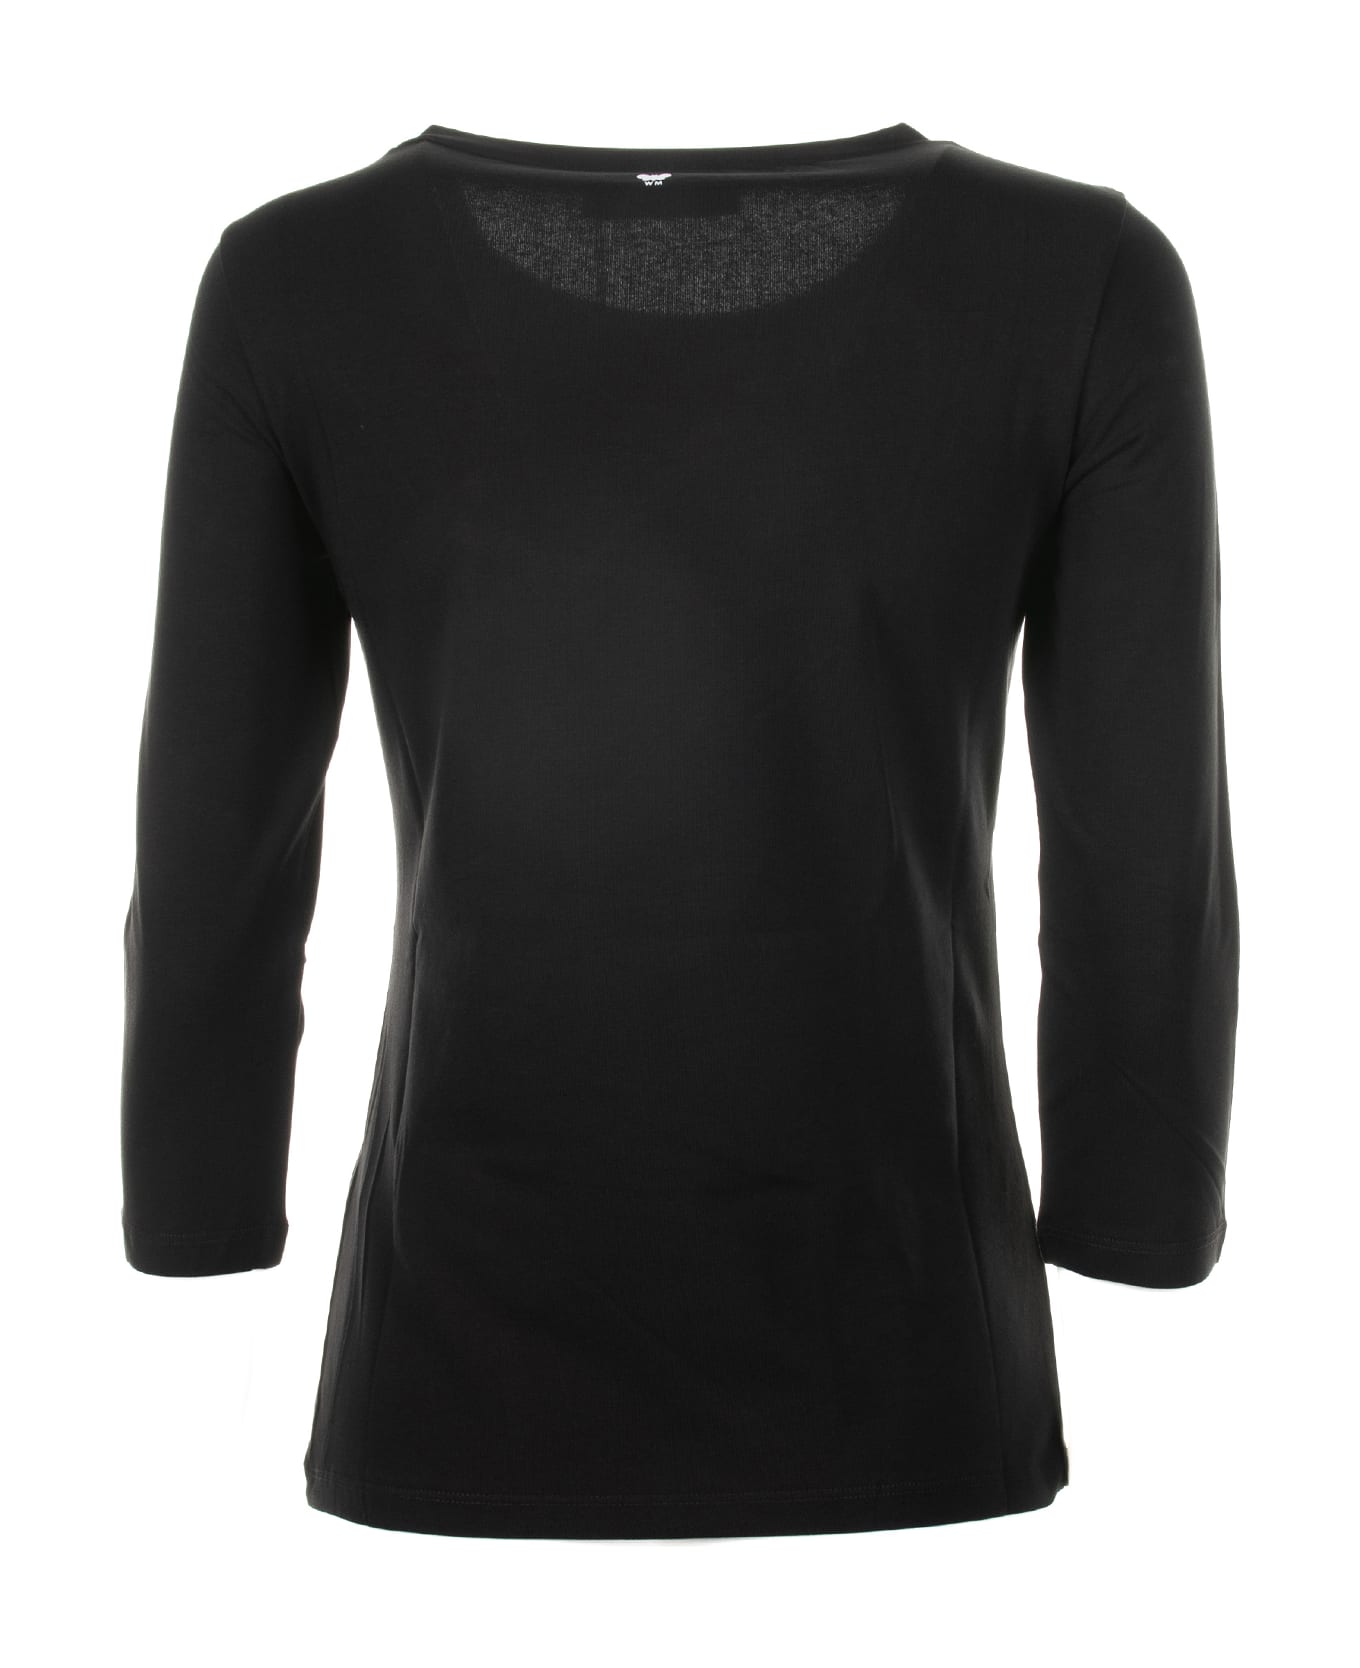 Weekend Max Mara Black 3/4 Sleeve Shirt - NERO